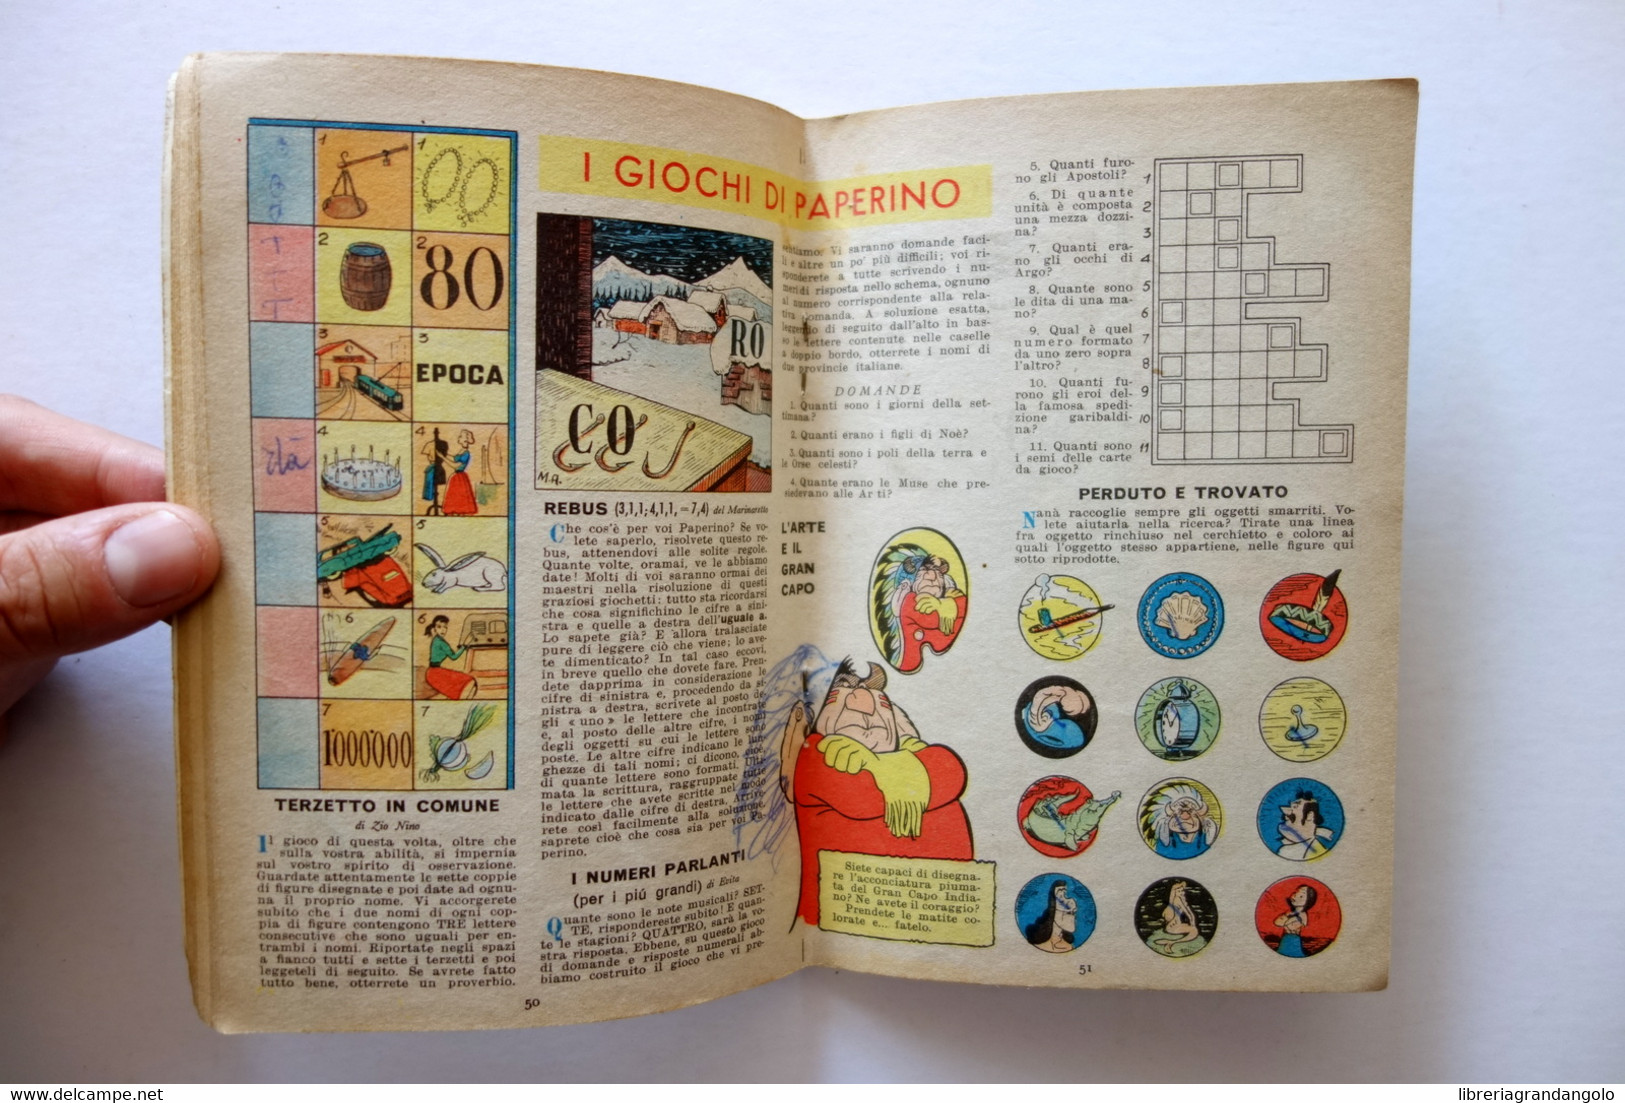 Topolino Walt Disney Vol. XII Numero 68 10 Giugno 1953 Bollino - Altri & Non Classificati